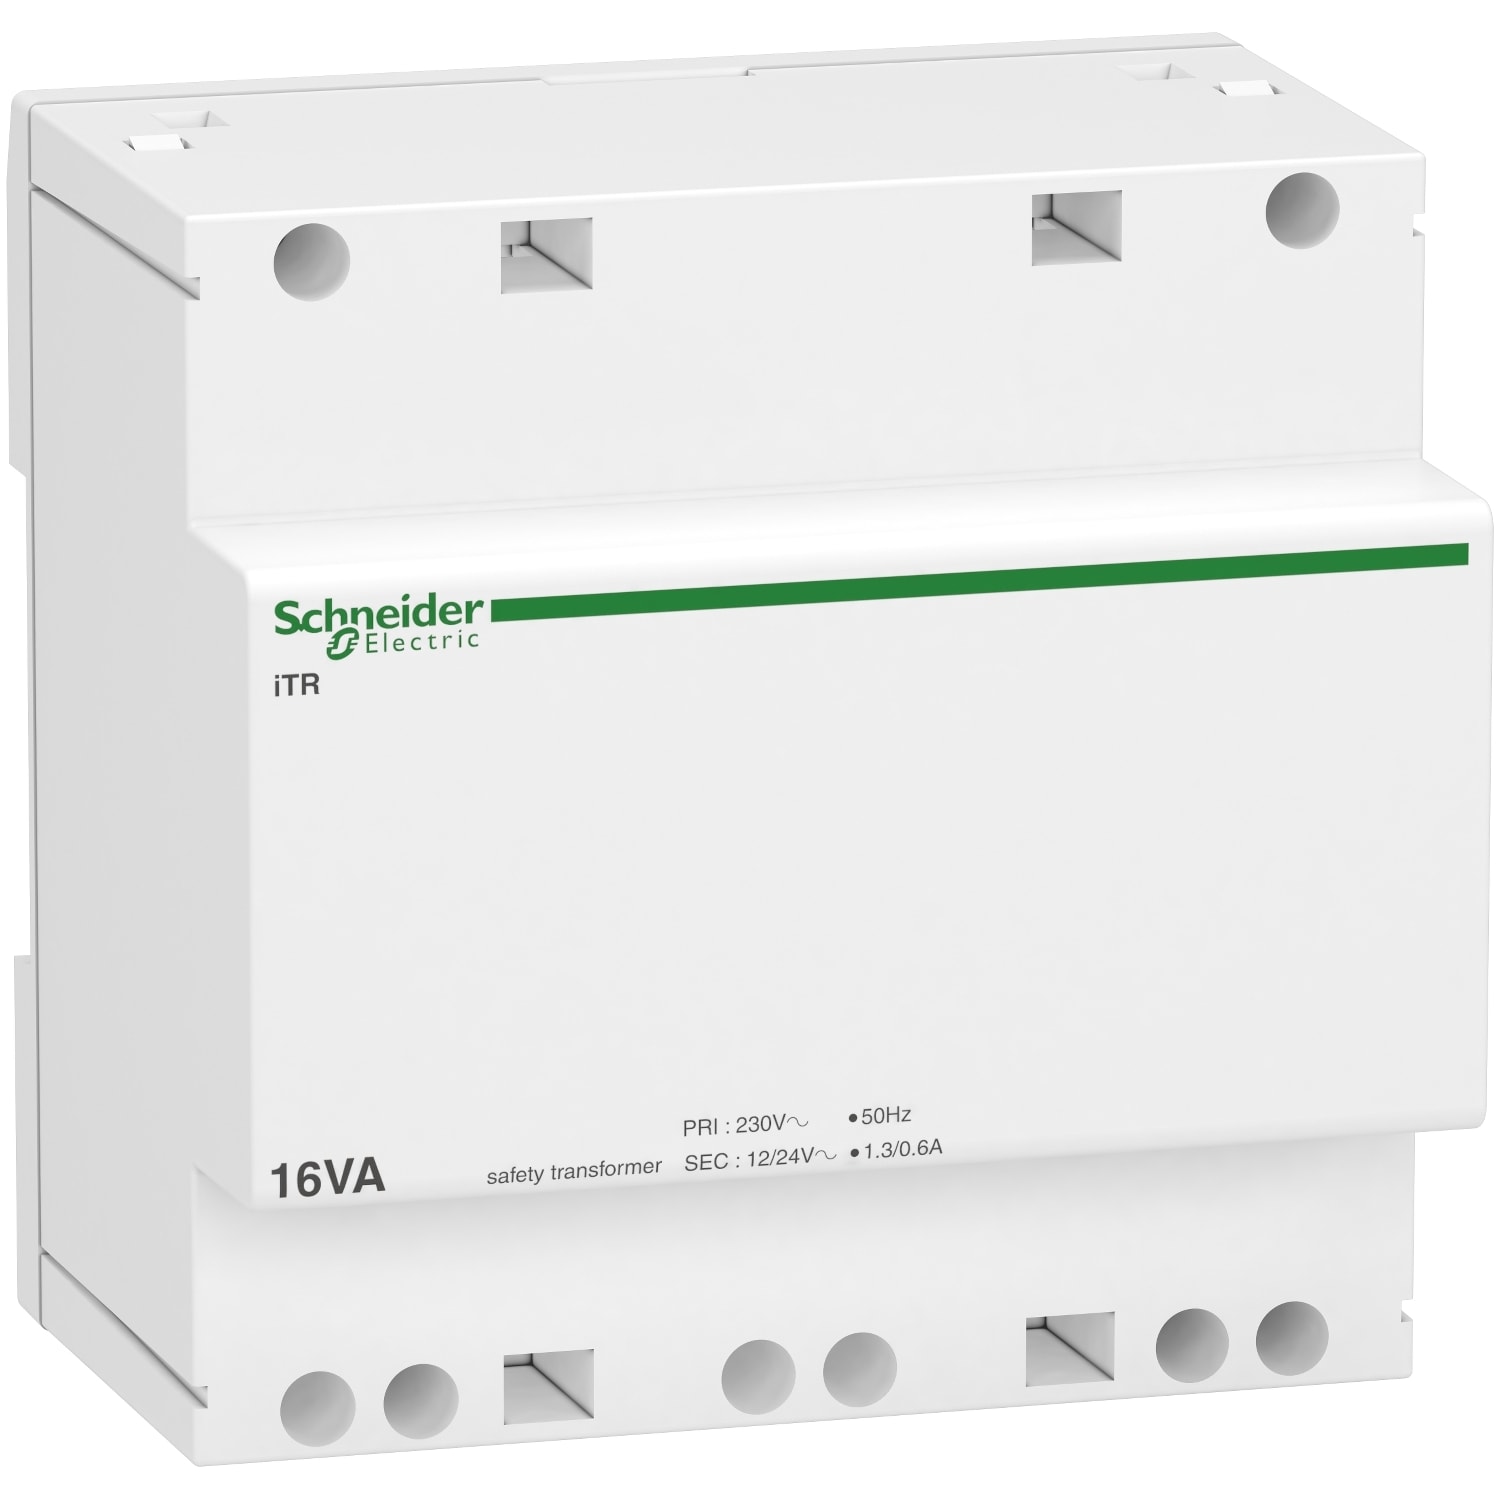 Schneider Electric - Acti9 iTR - transformateur de securite - 16VA - 230Vca-12-24Vca